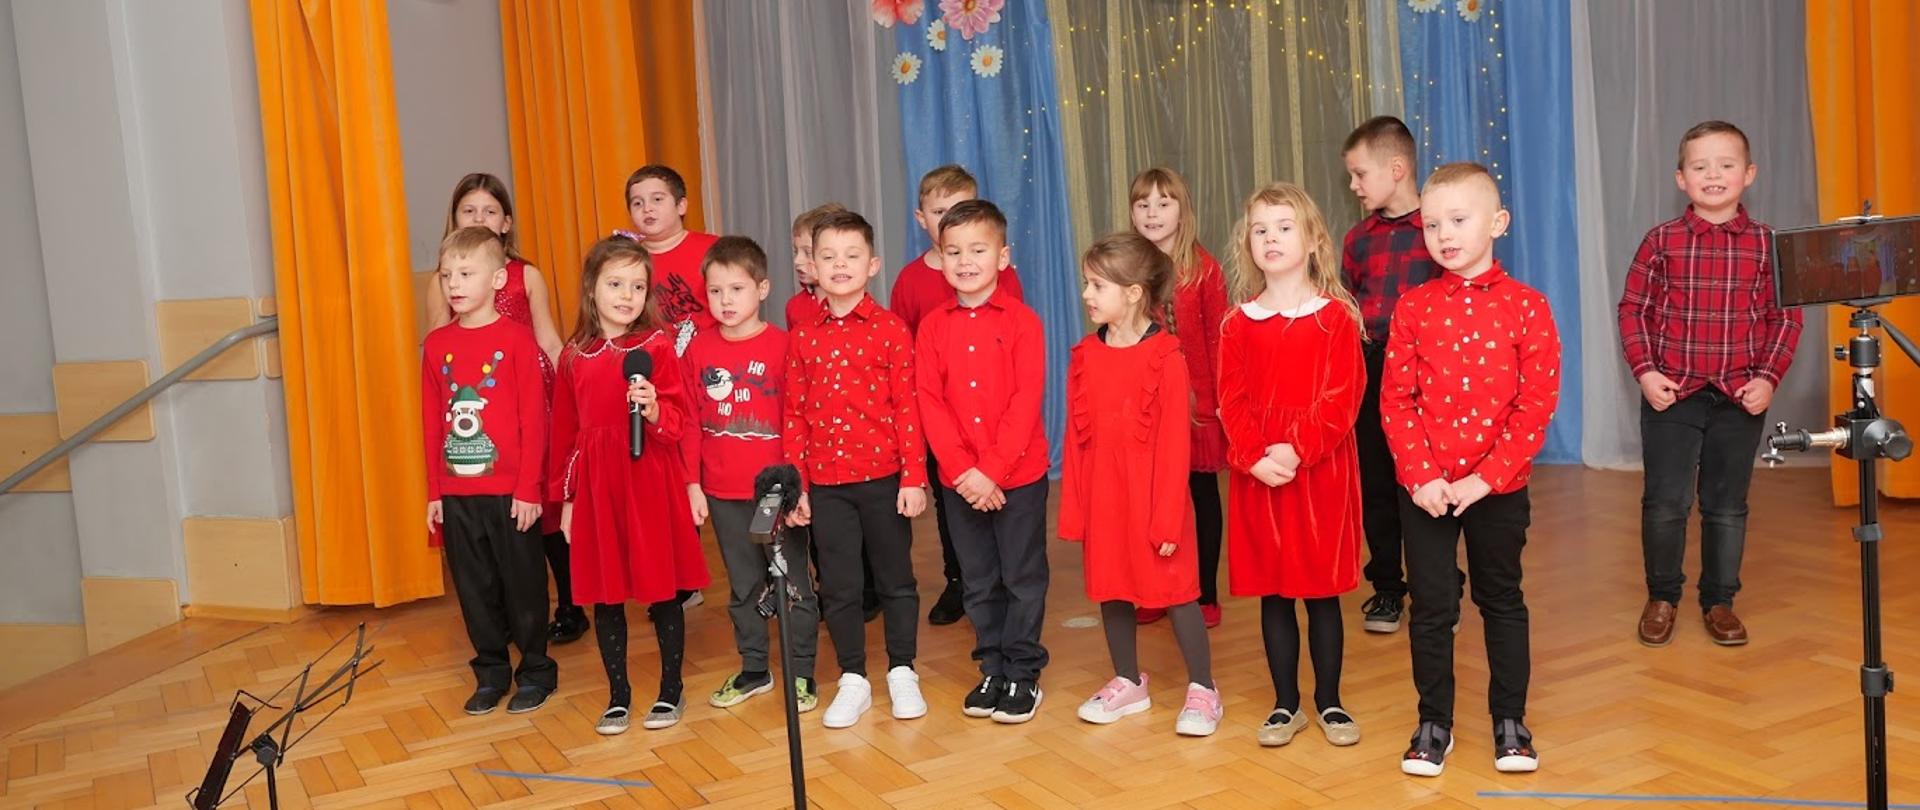 Grupa dzieci stoi na scenie i śpiewa piosenkę.